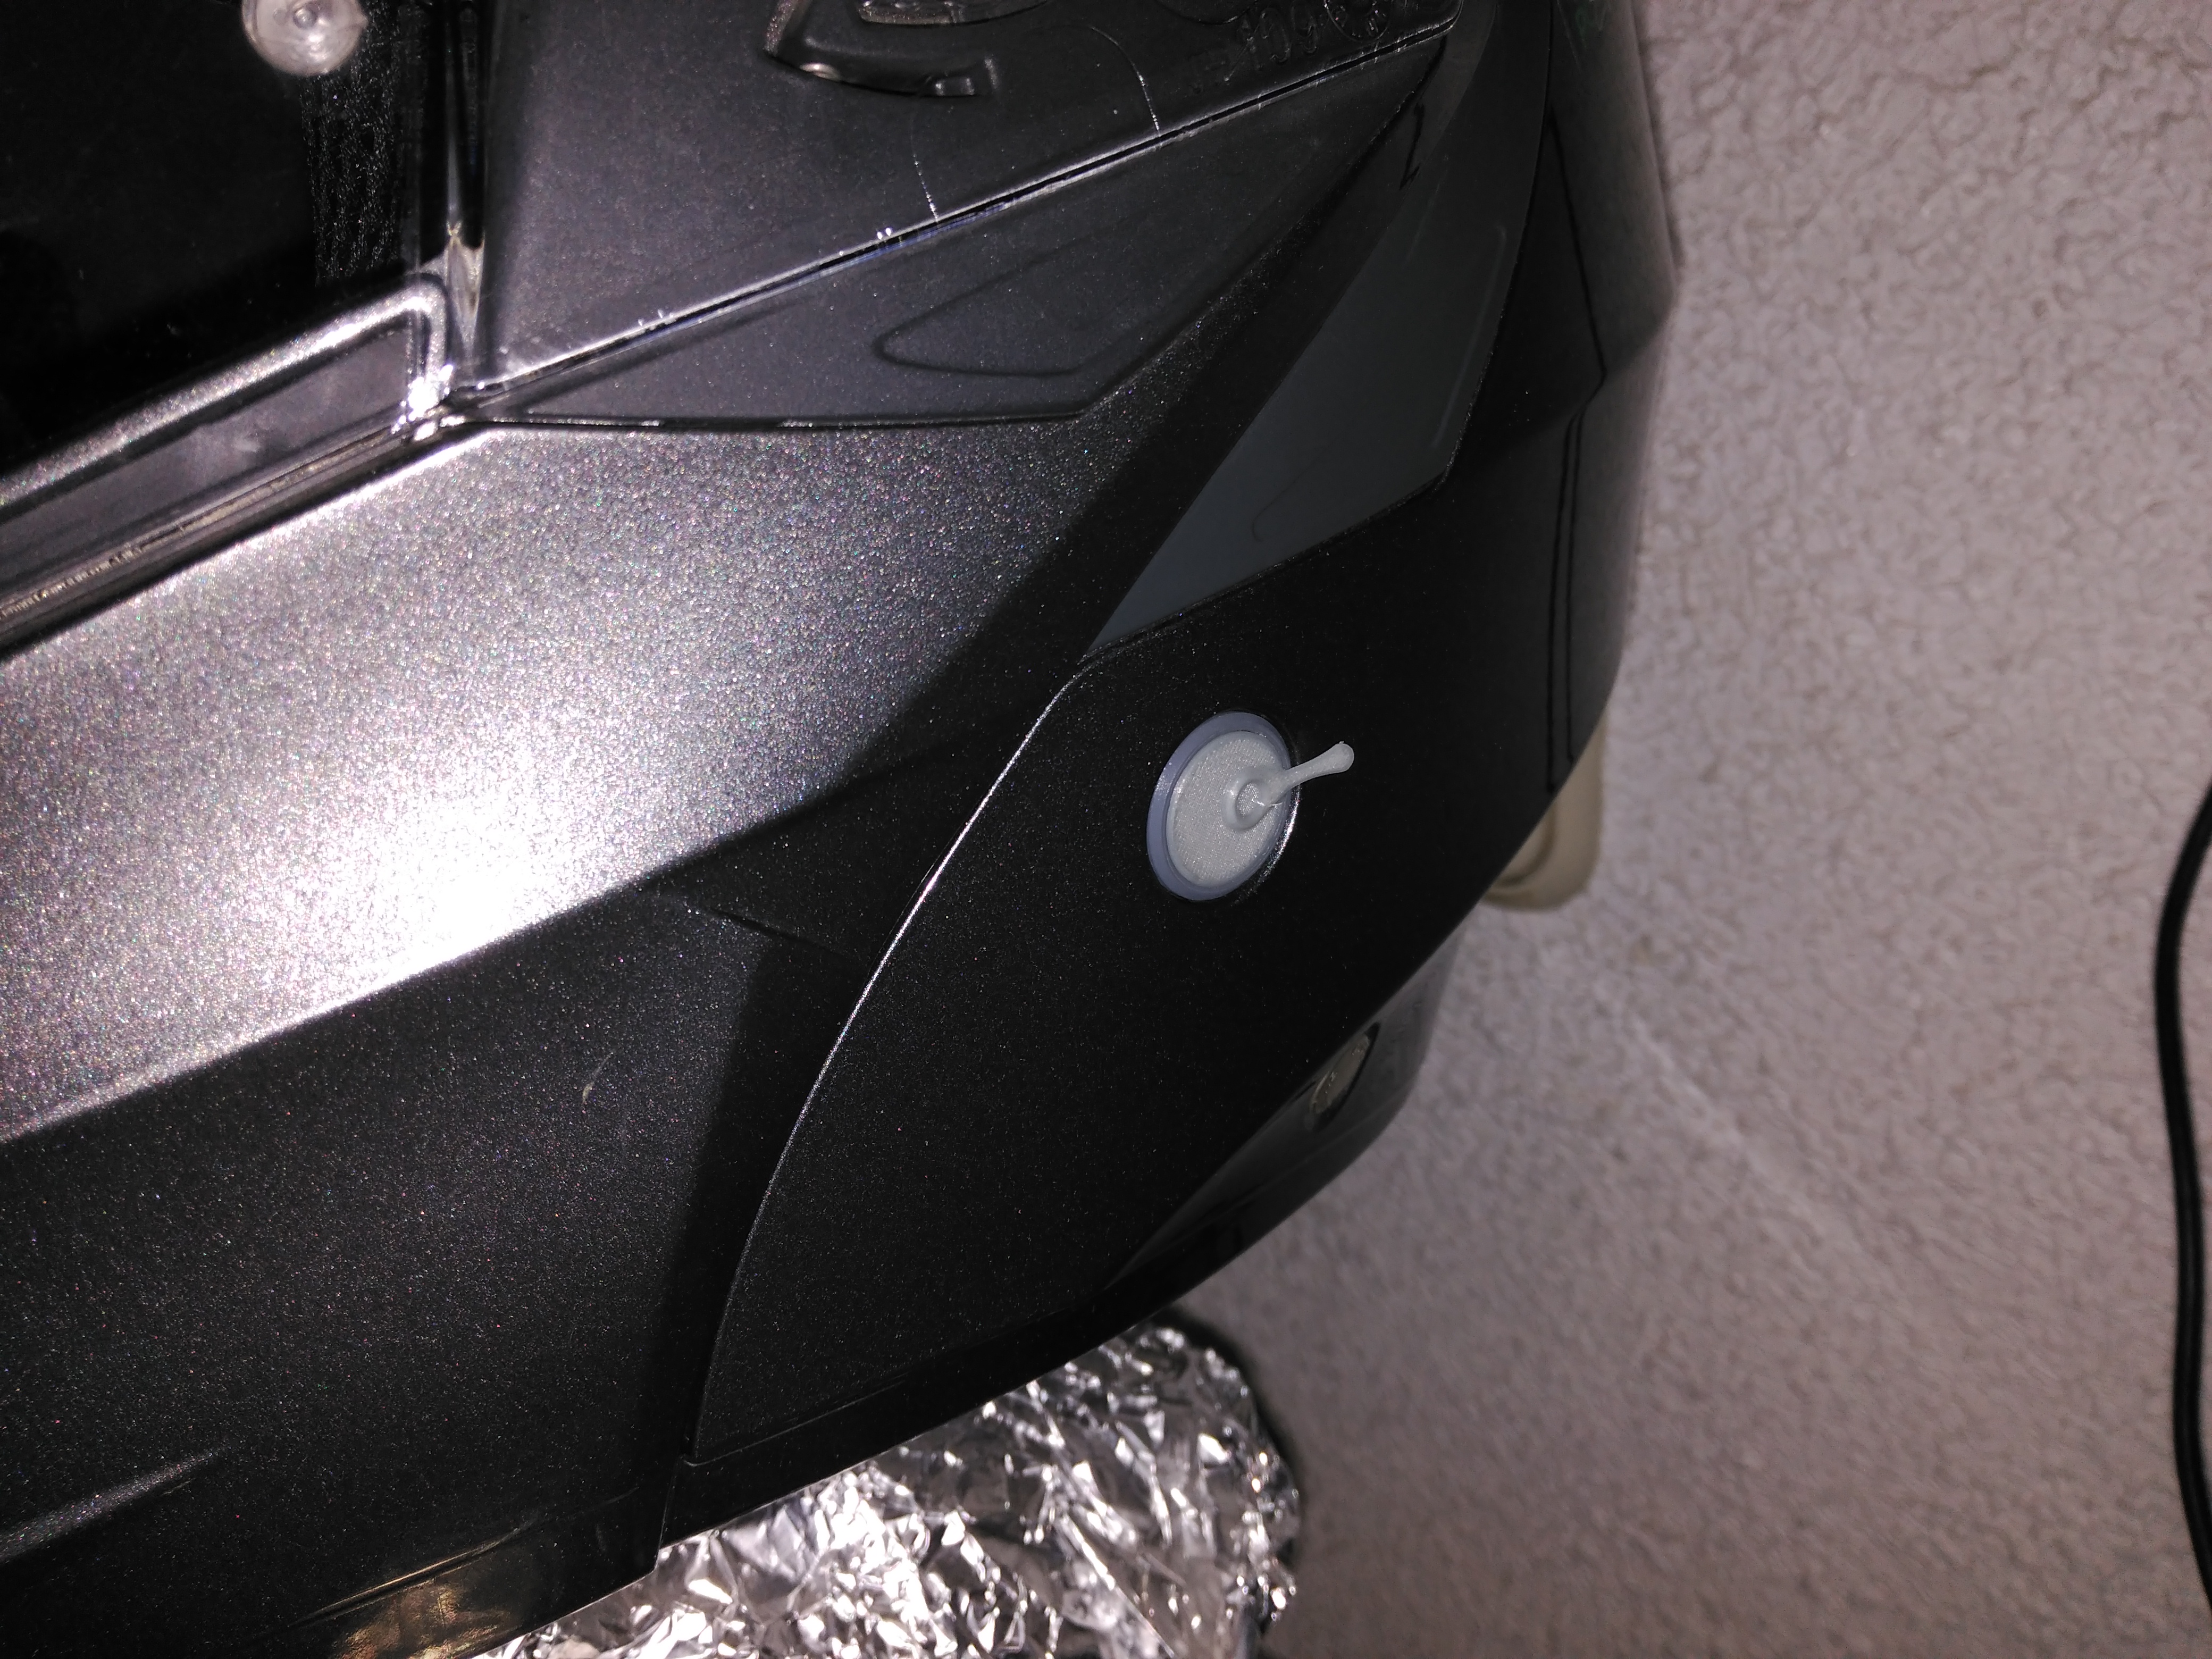 Toma micro-USB en el tapón de interface bluetooth del casco. Img_20190129_173838